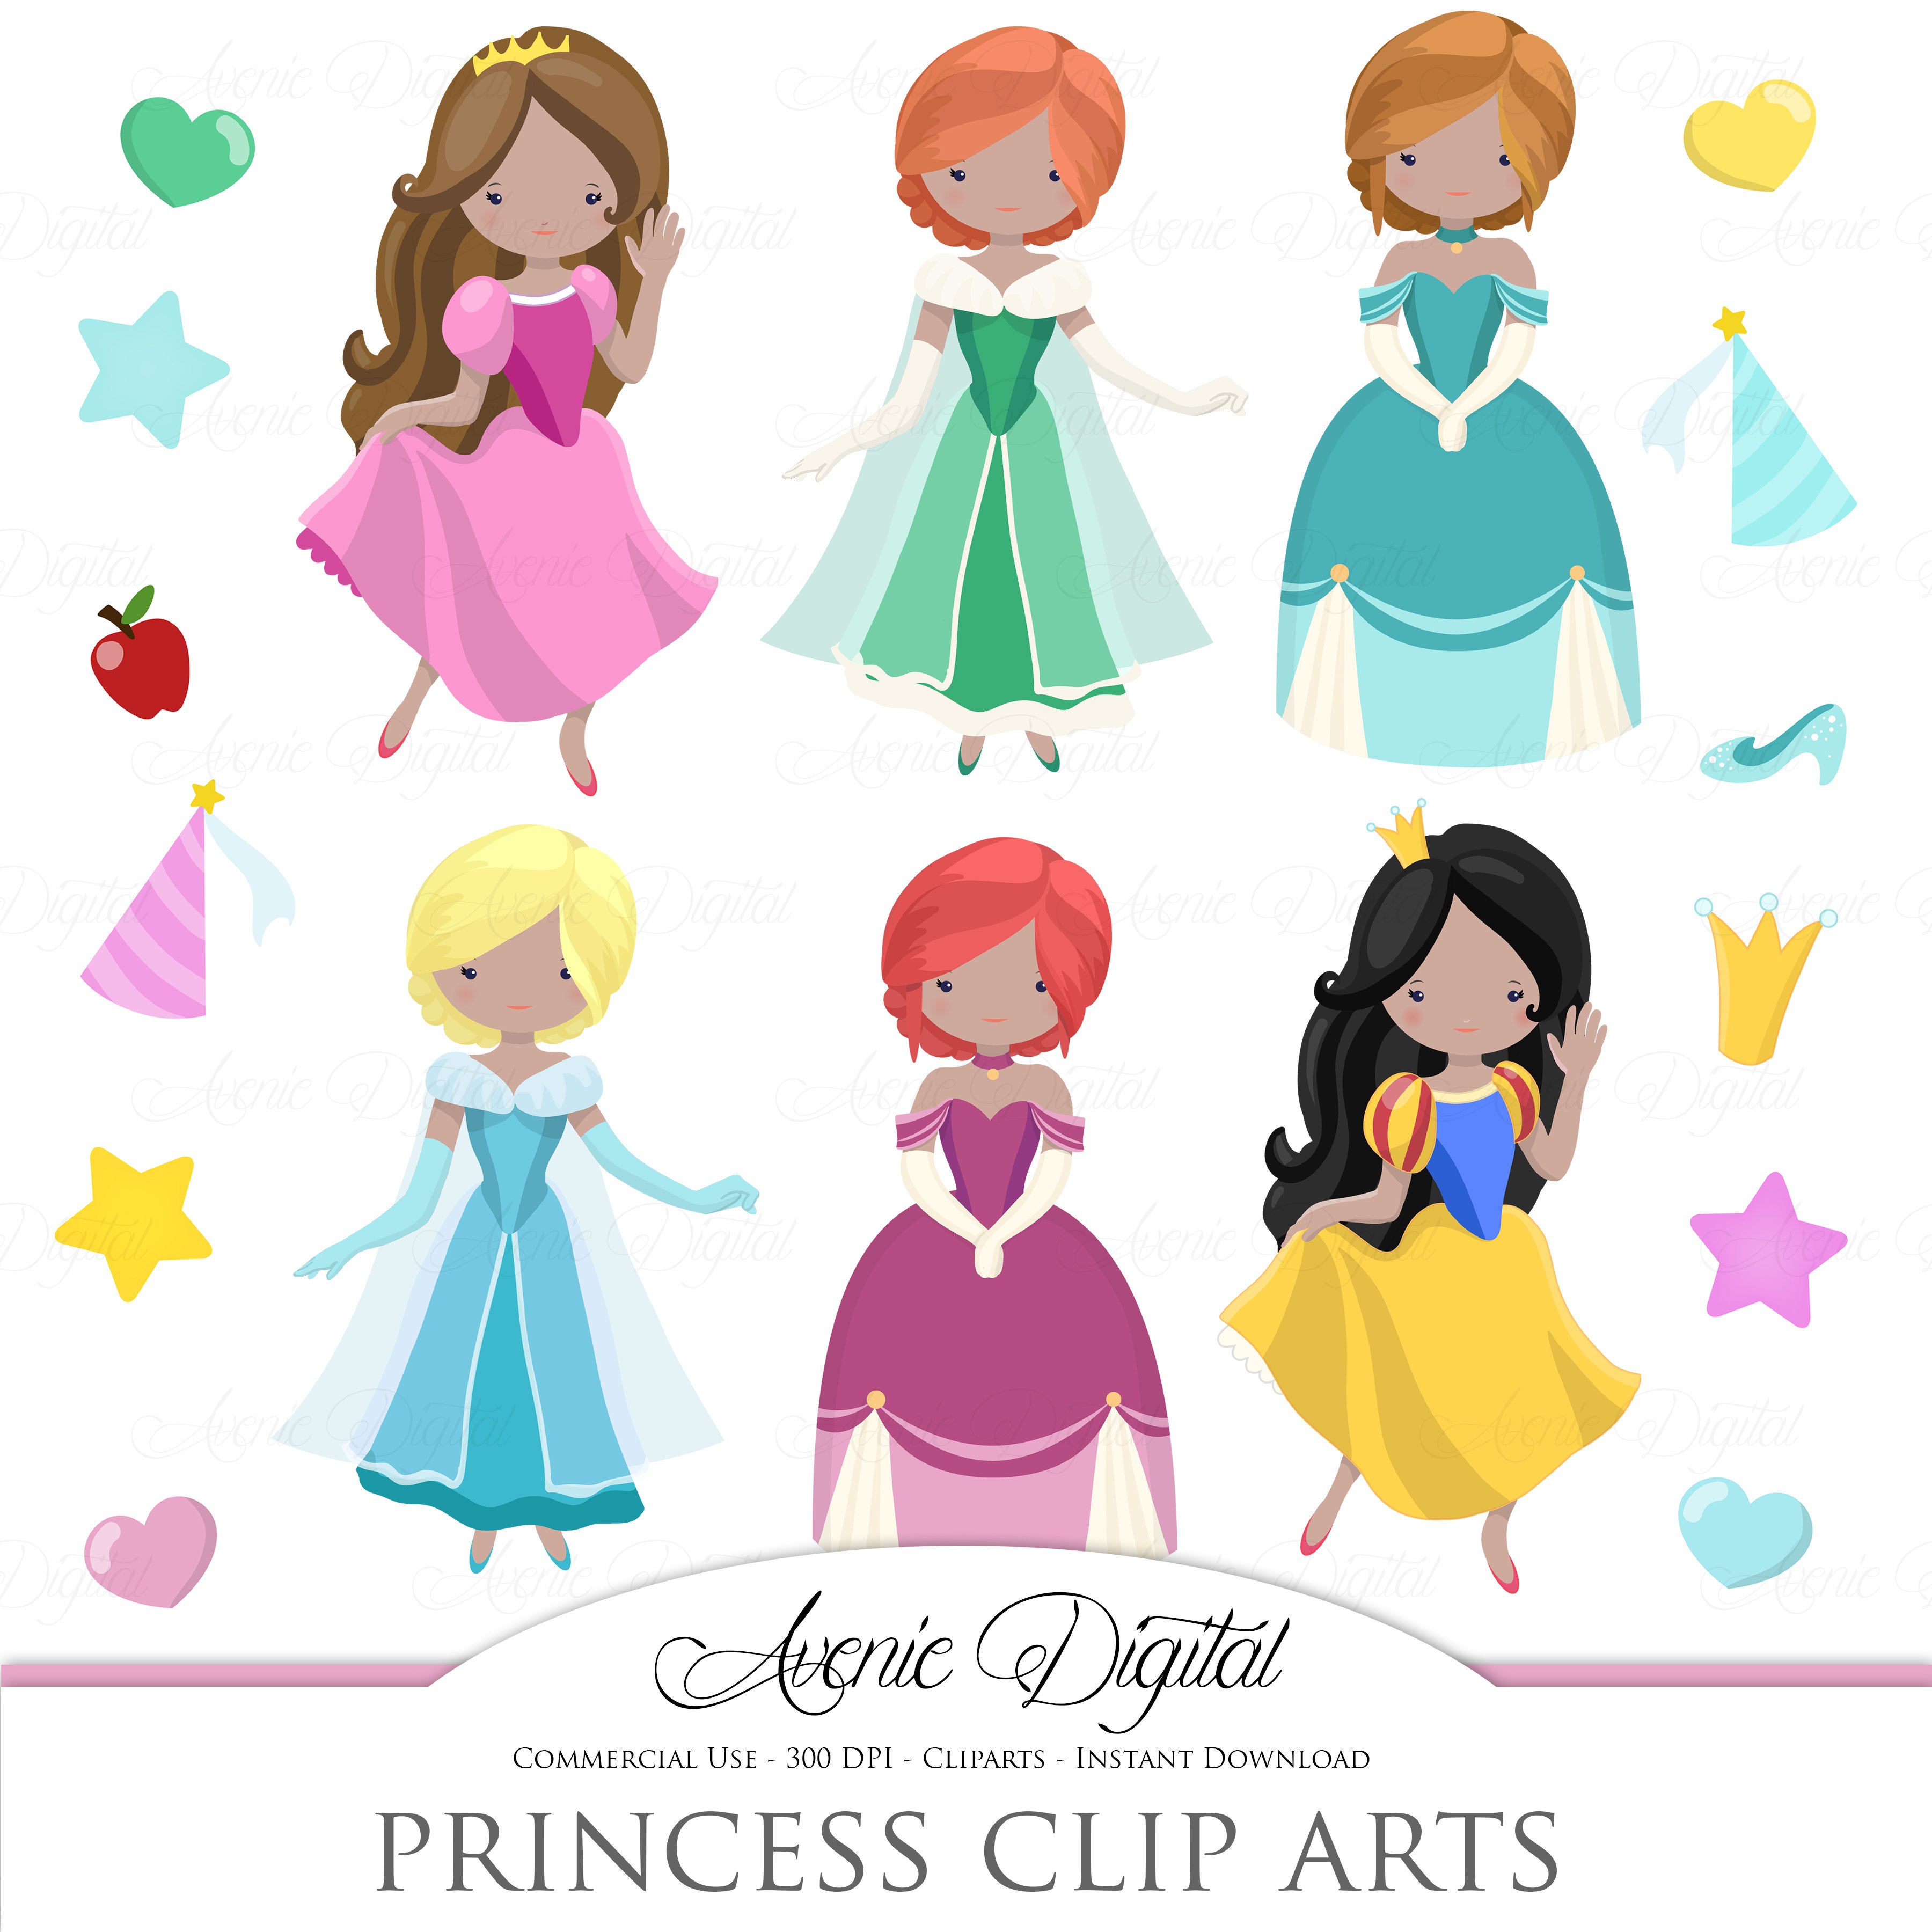 Fairytale Princess Clipart + Vectors cover image.